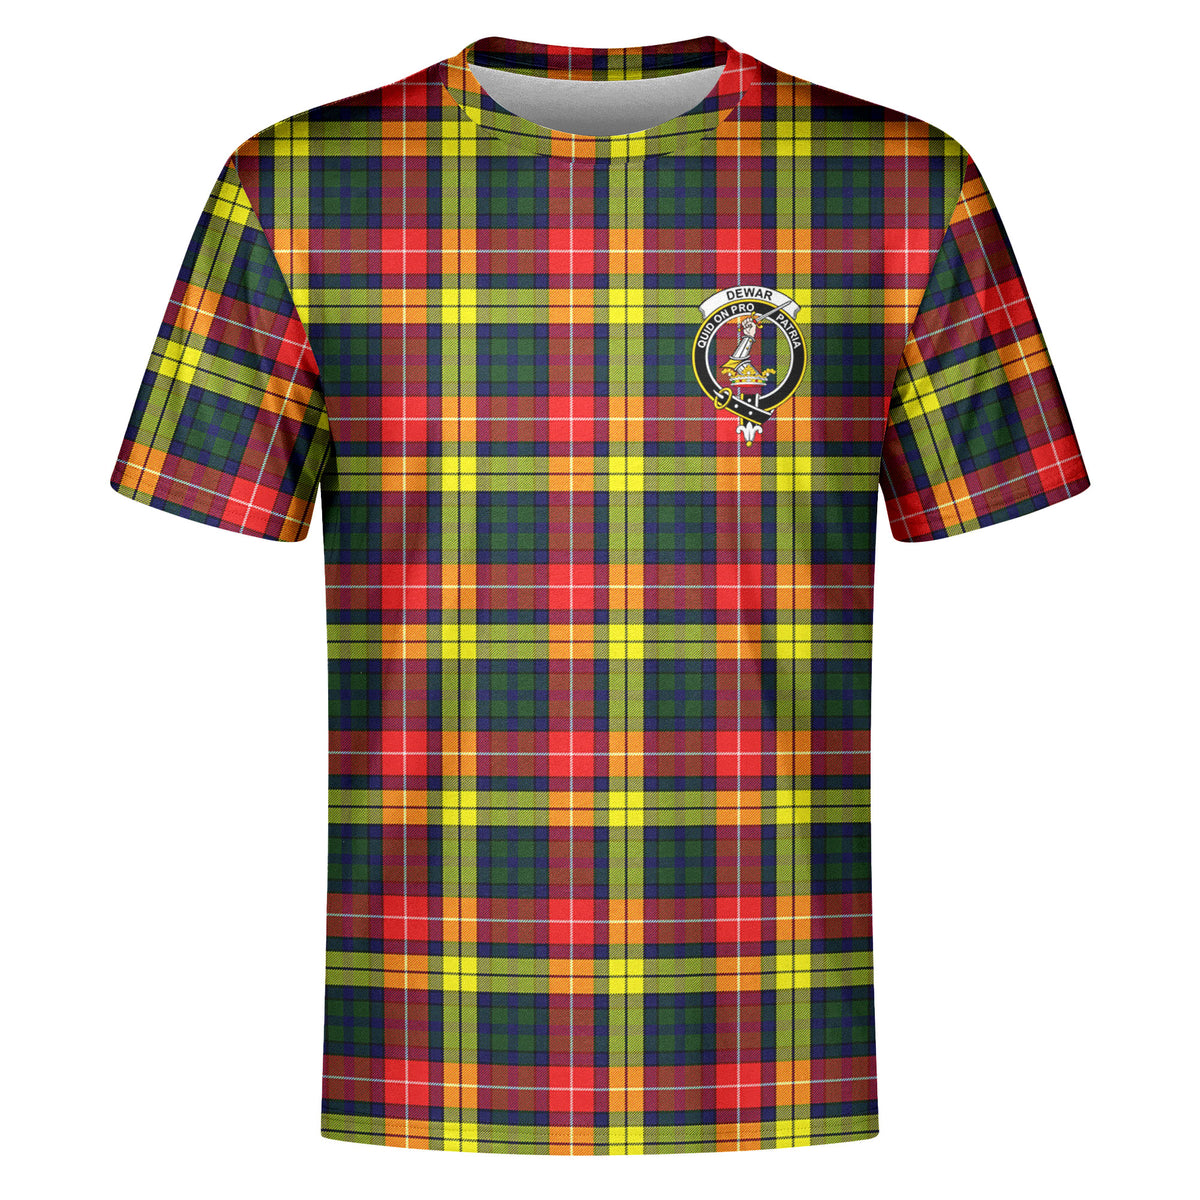 Dewar Tartan Crest T-shirt